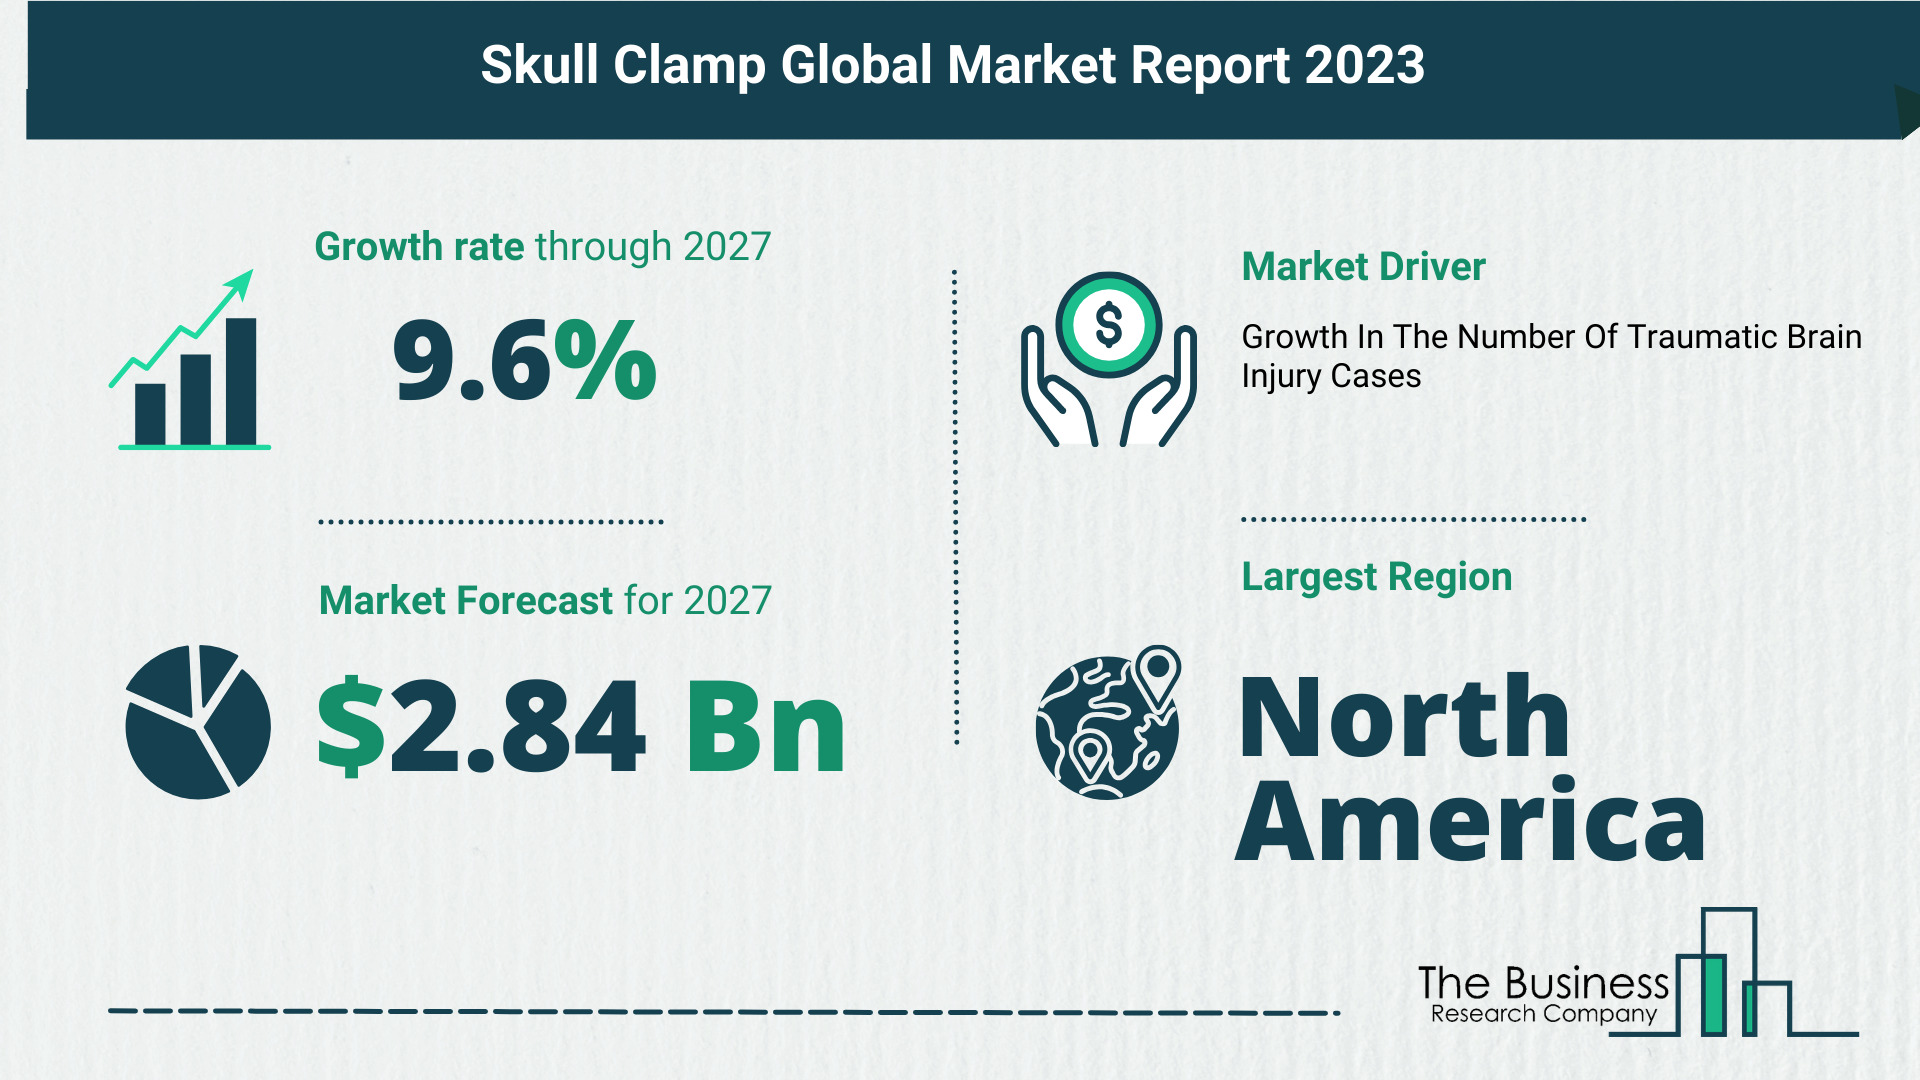 Global Skull Clamp Market